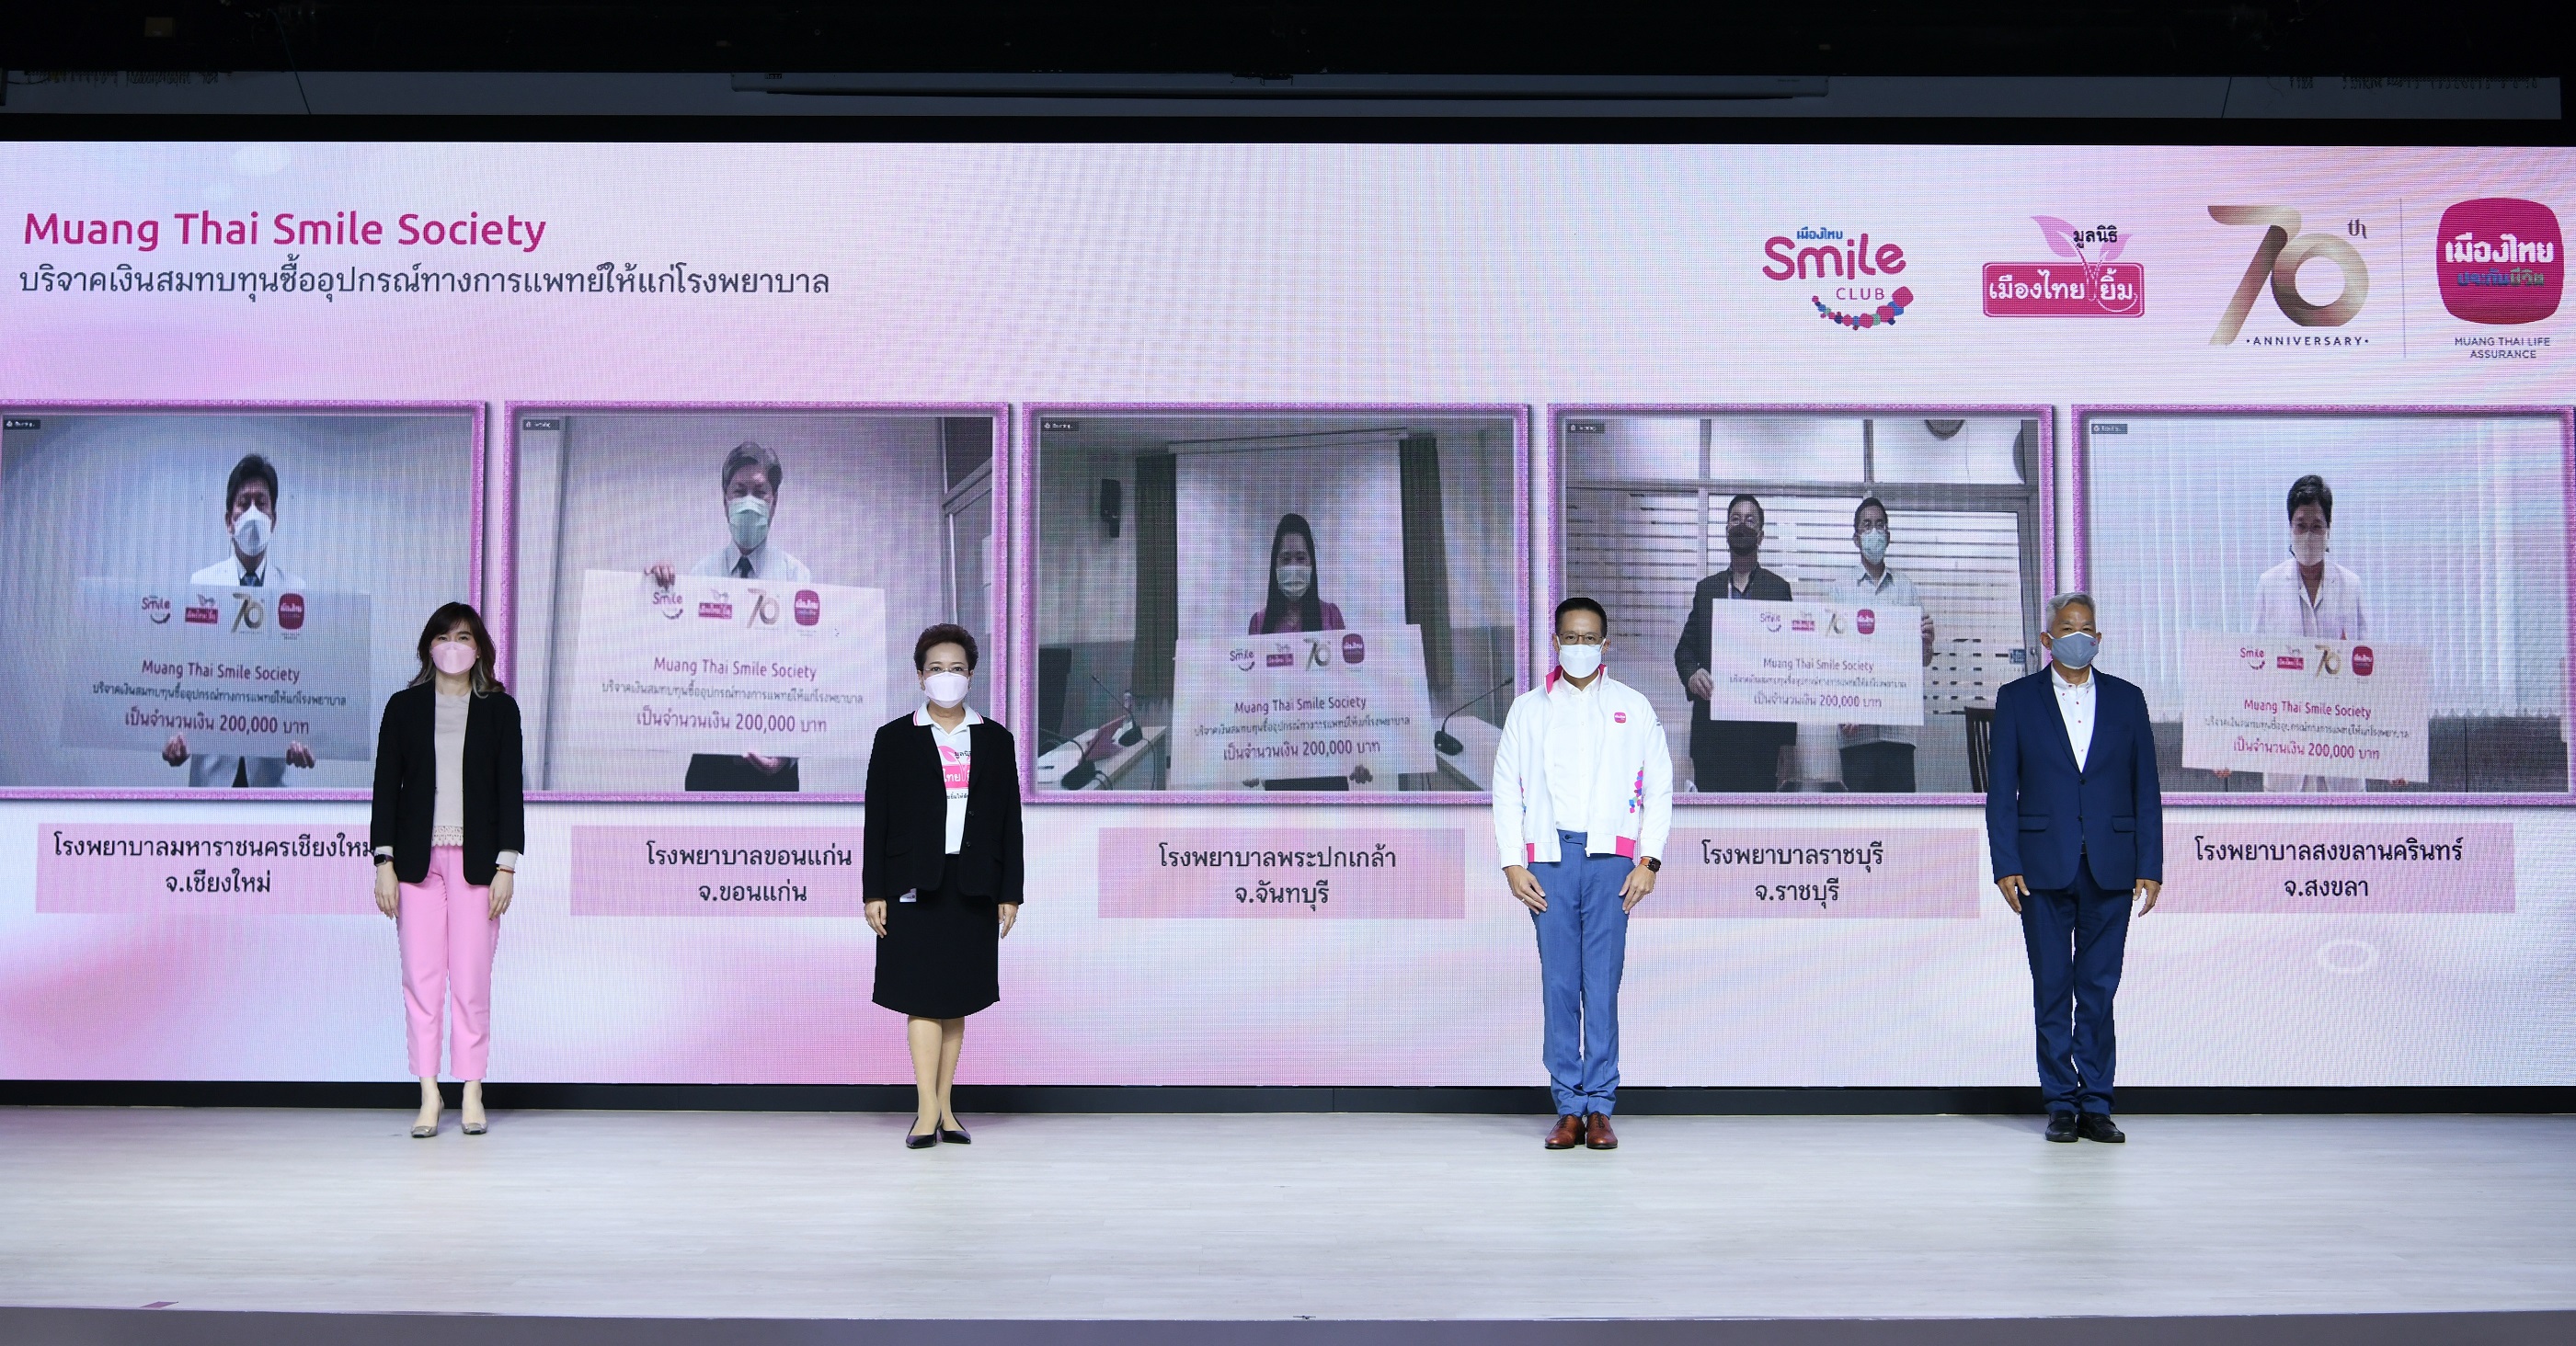 สมาชิกเมืองไทยสไมล์คลับ ร่วมกับมูลนิธิเมืองไทยยิ้ม บริจาคเงิน 1 ล้านบาท  แก่ 5 โรงพยาบาล เพื่อซื้ออุปกรณ์ทางการแพทย์